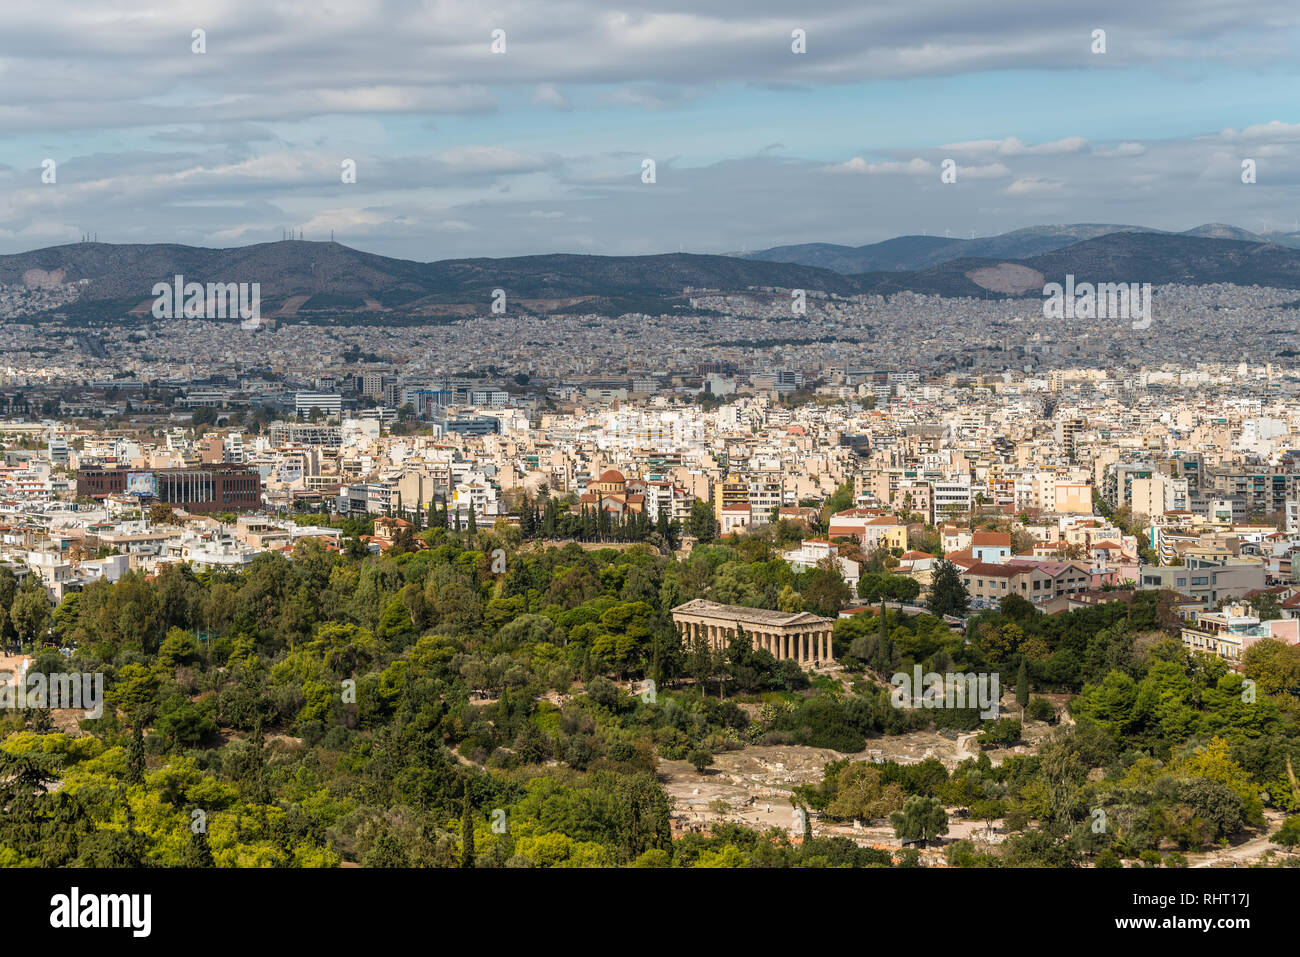 Athen, Griechenland - November 1, 2017: Panorama von Athen, von der Akropolis, einer alten Zitadelle befindet sich auf einem Felsvorsprung über der Stadt und Fa Stockfoto